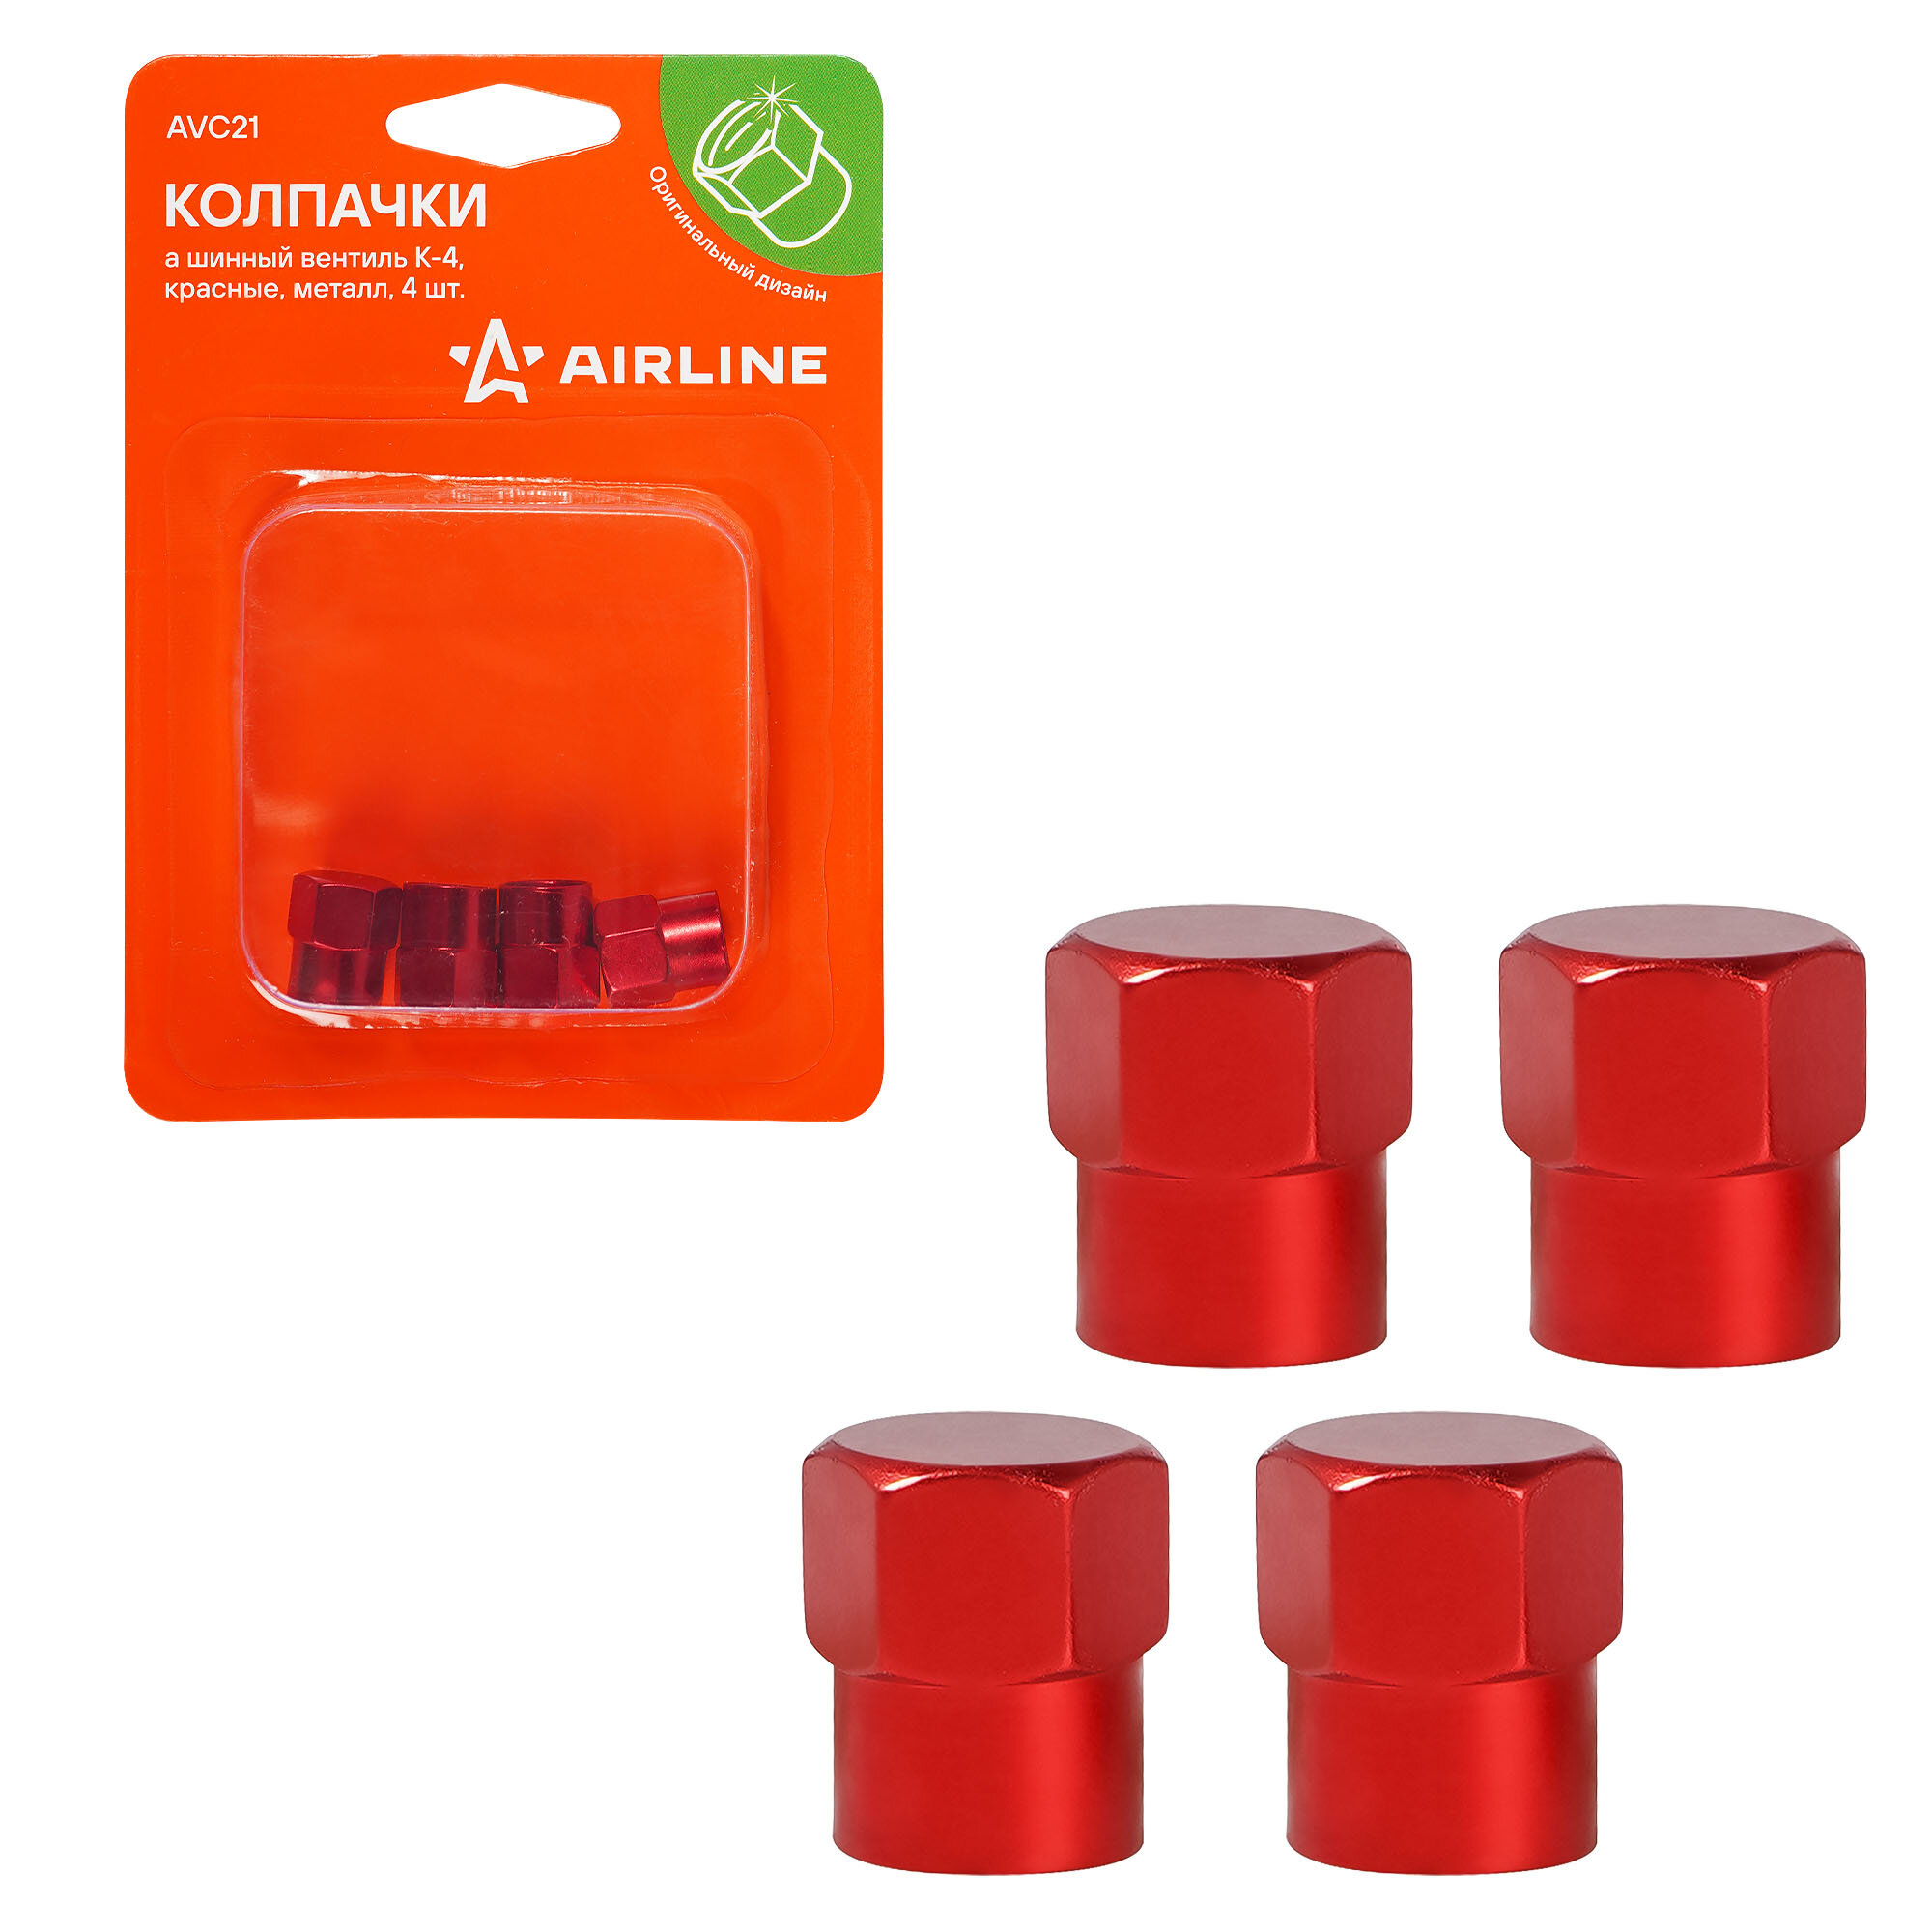 Колпачки на шинный вентиль K-4, красные, металл, 4 шт. AVC21 AIRLINE